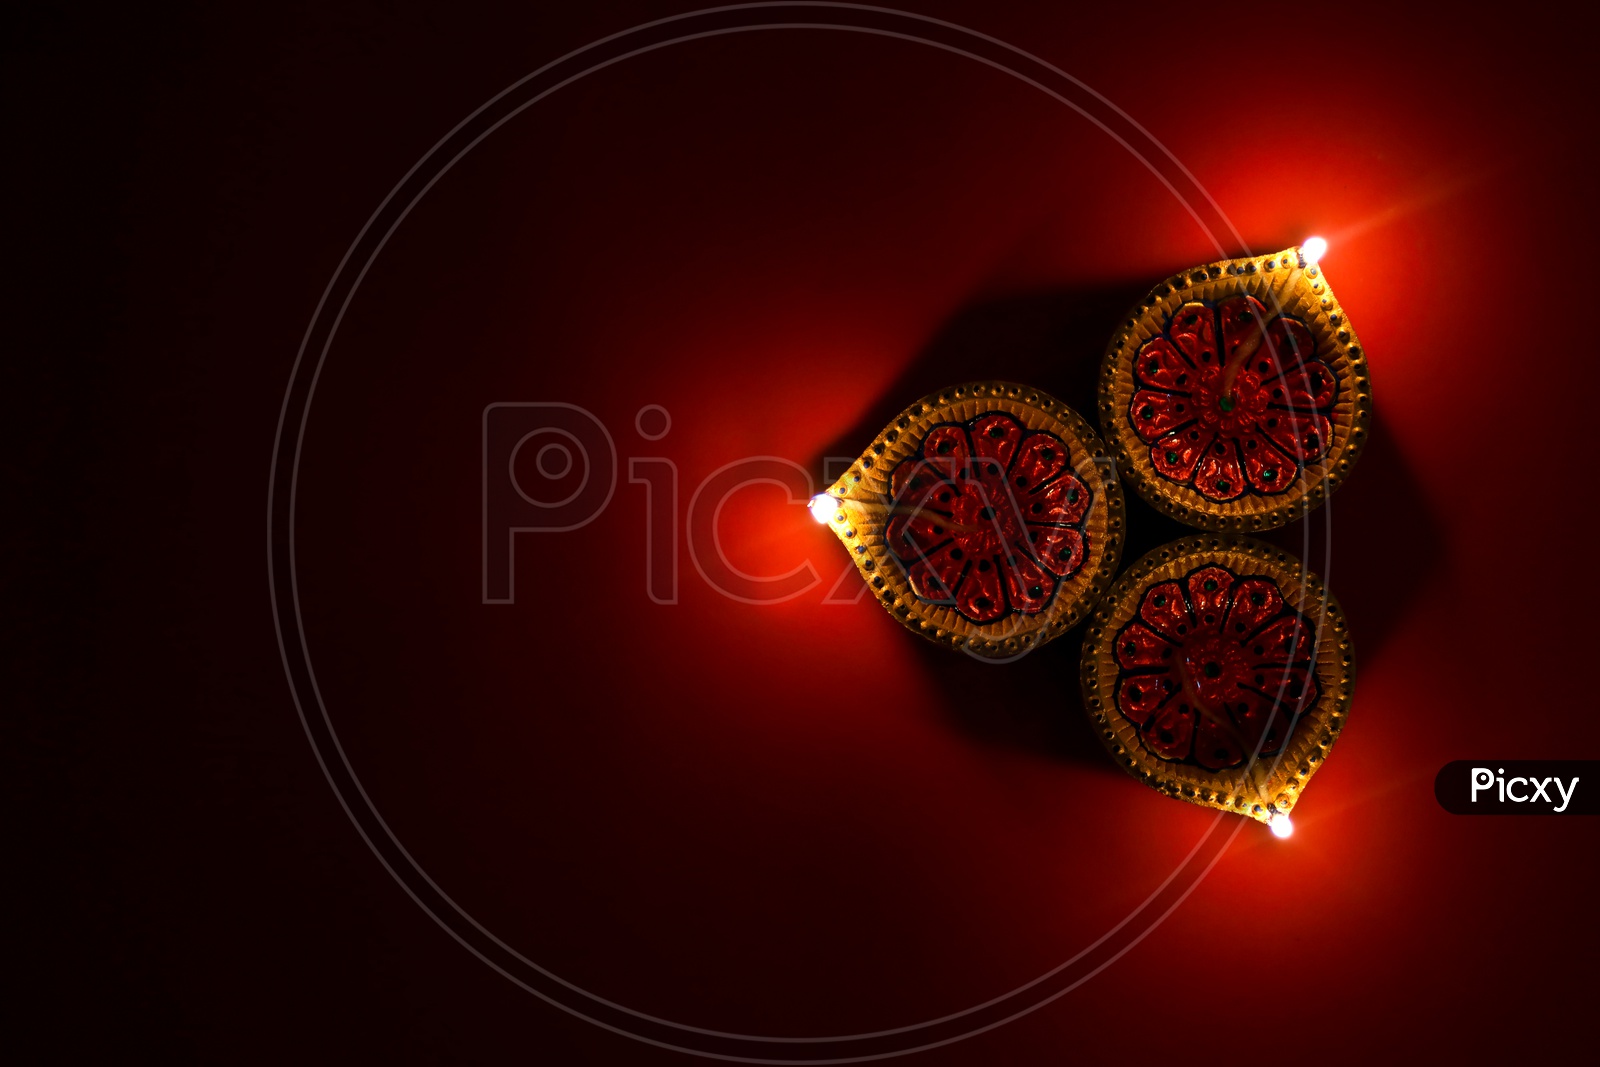 Indian Festival Diwali, Diwali Lamps/Deepavali Diyas